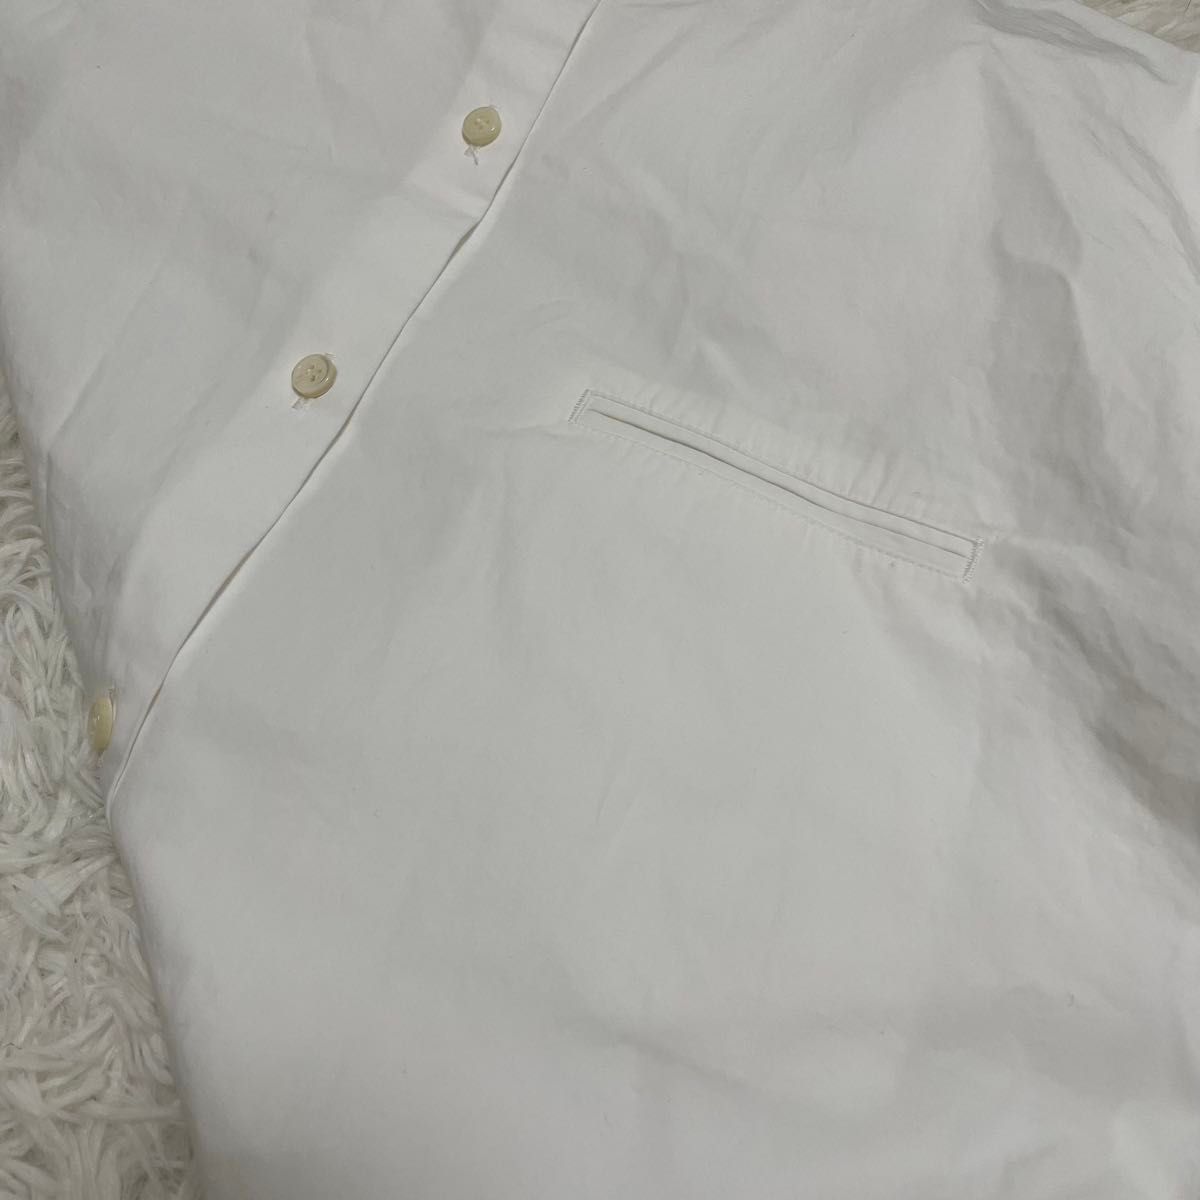 THE SHINZONE ザシンゾーン スタンドビッグシャツ ノーカラー 白 ホワイト バンドカラー バンドカラーシャツ 長袖